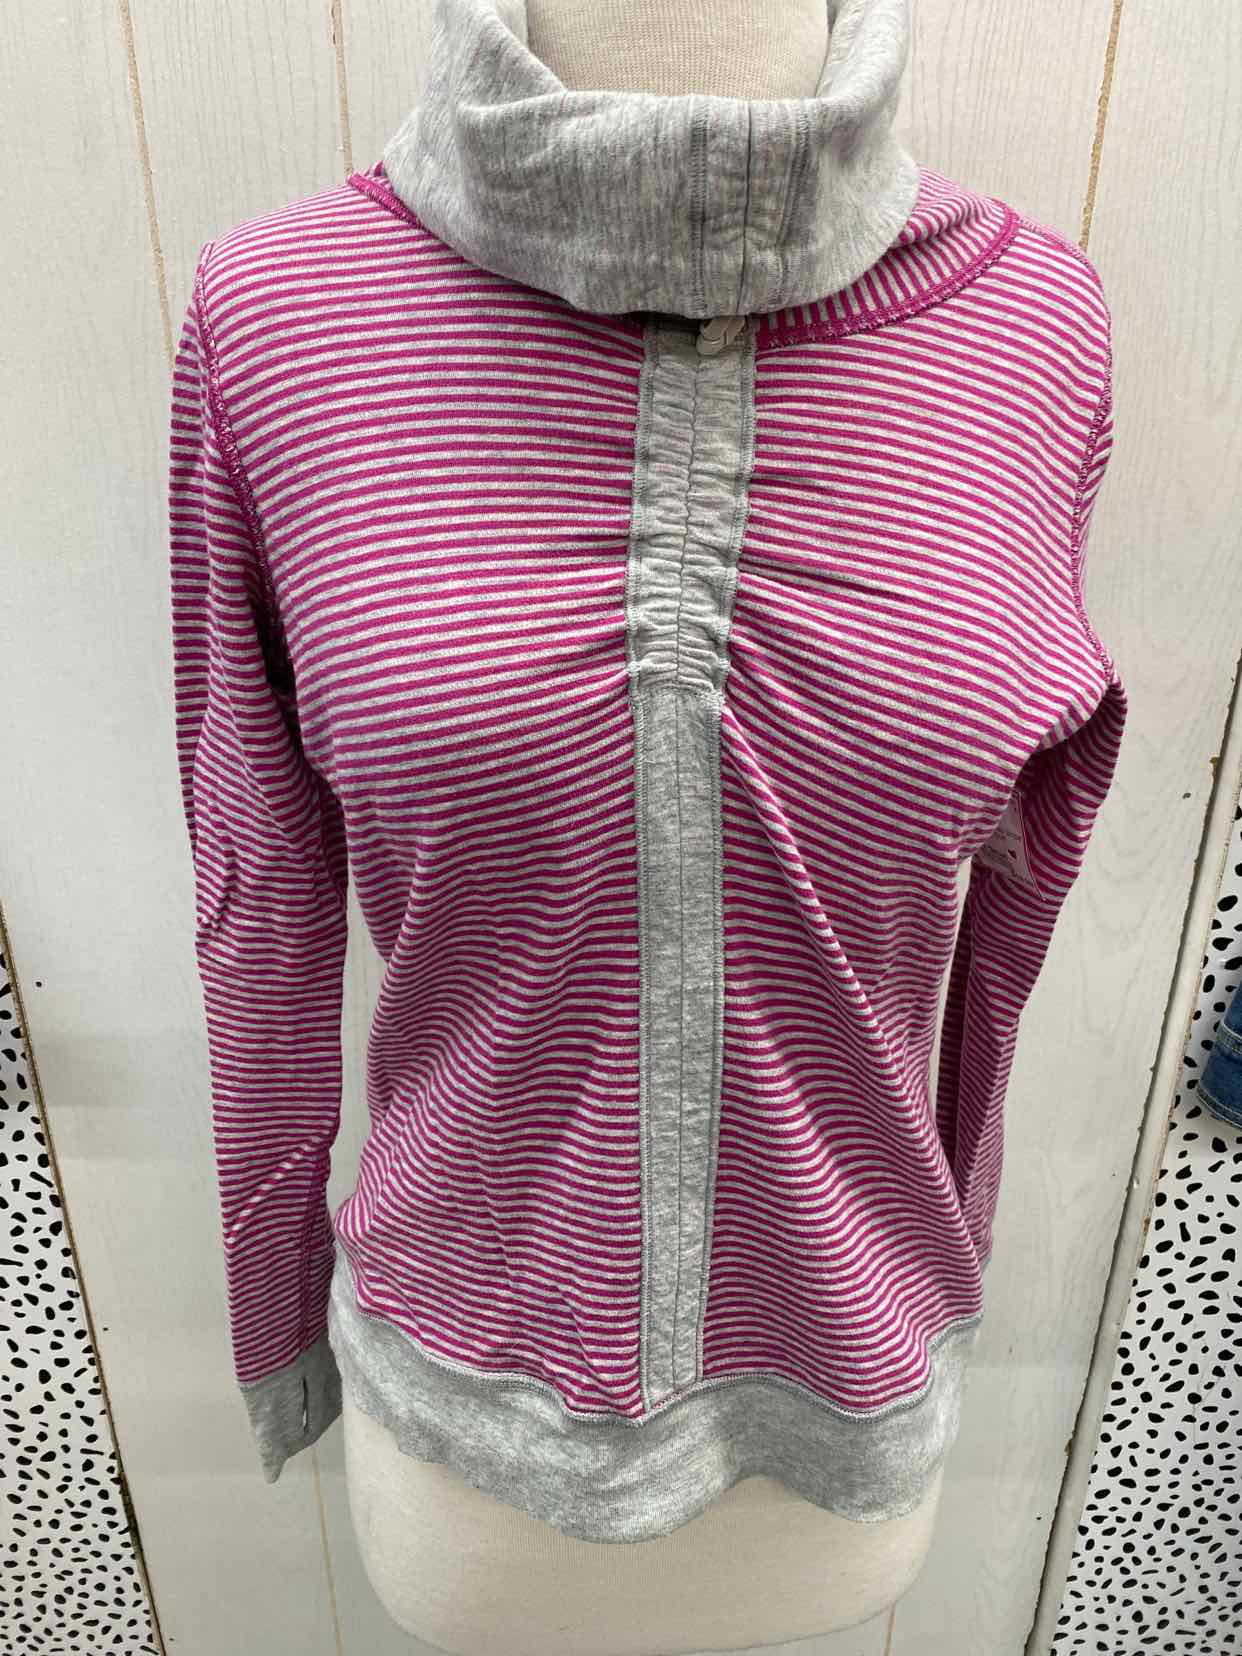 Lululemon Pink Womens Size Small Sweatshirt